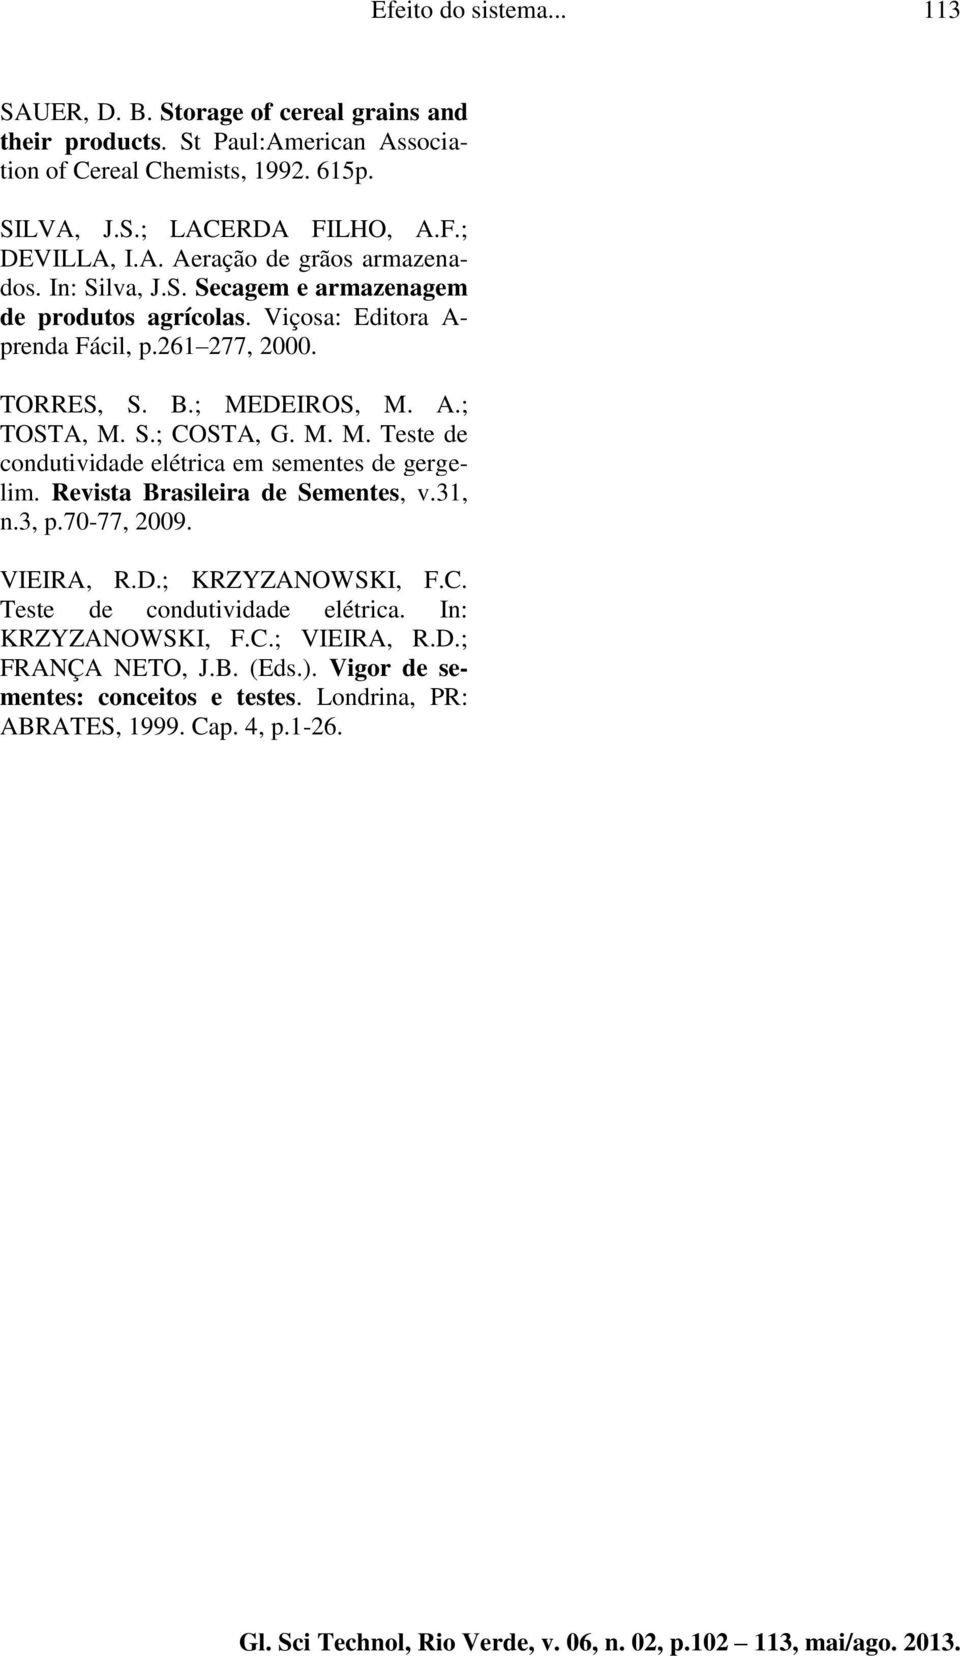 S.; COSTA, G. M. M. Teste de condutividade elétrica em sementes de gergelim. Revista Brasileira de Sementes, v.31, n.3, p.70-77, 2009. VIEIRA, R.D.; KRZYZANOWSKI, F.C. Teste de condutividade elétrica. In: KRZYZANOWSKI, F.